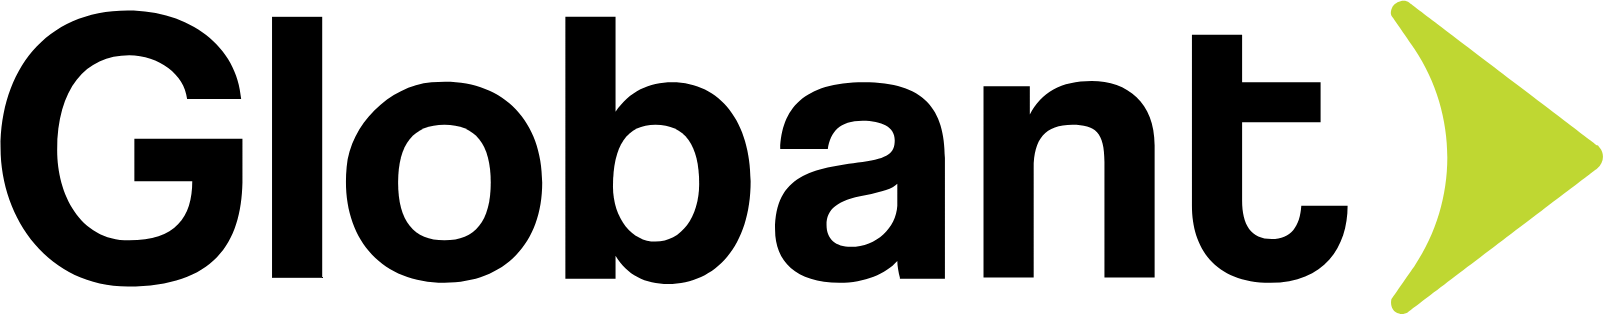 Globant logo large (transparent PNG)